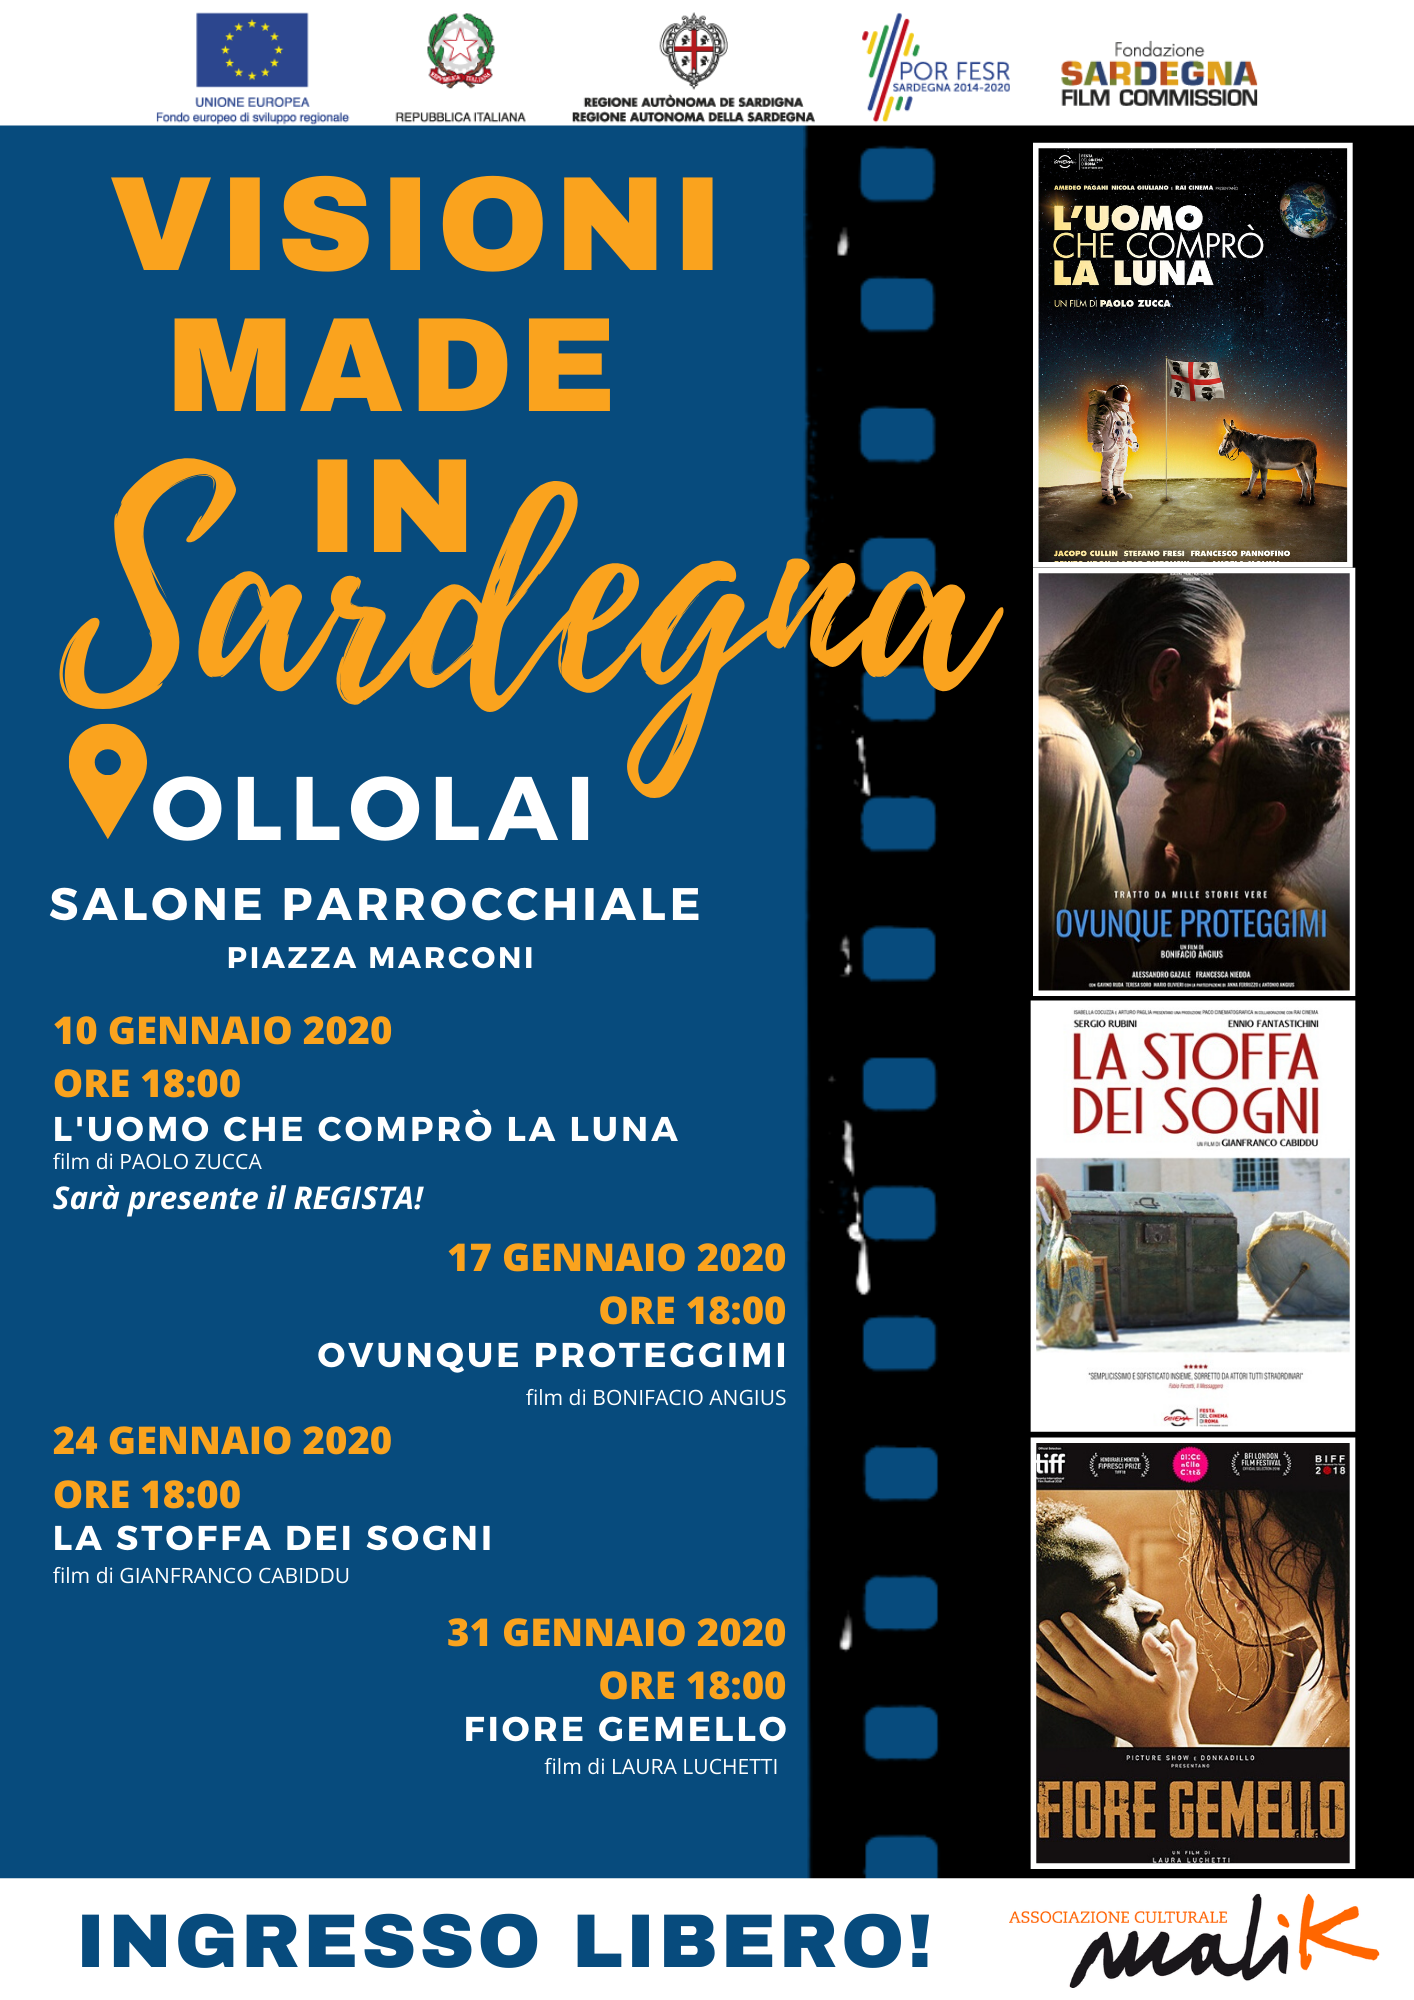 Un gennaio all’insegna del cinema made in Sardegna per Ollolai, saranno 5 le giornate del progetto “Visioni made in Sardegna”